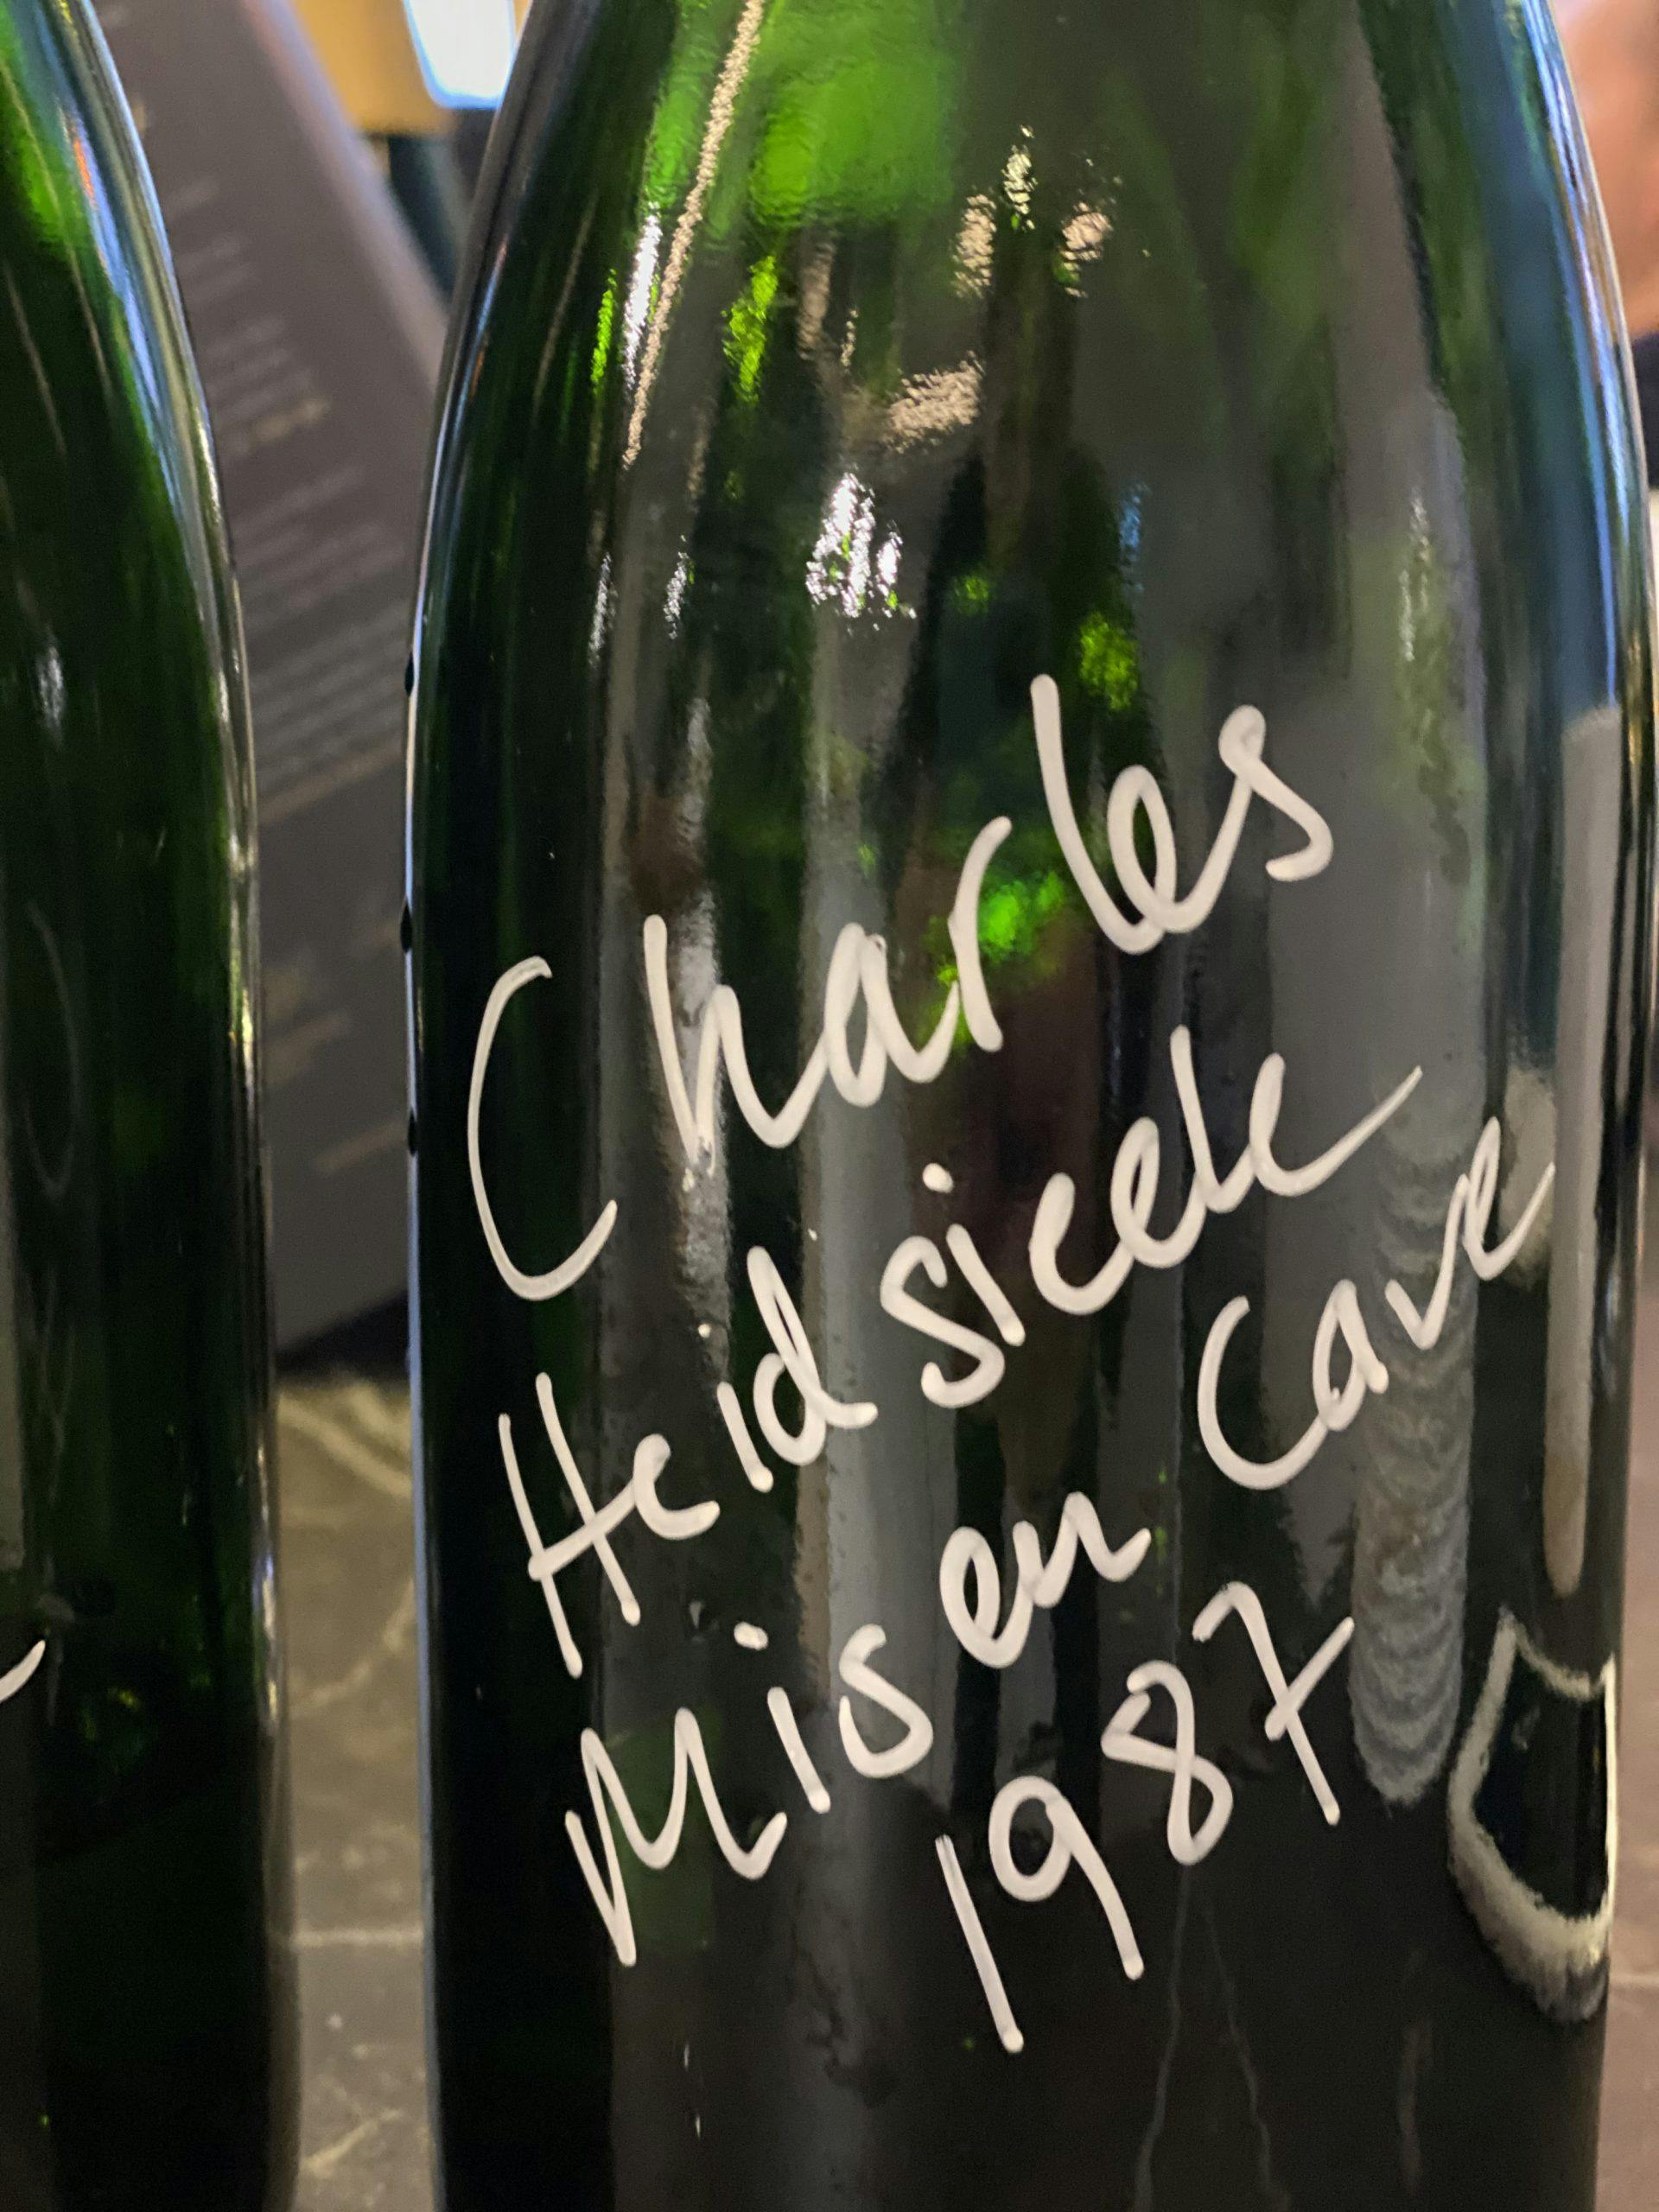 Champagne Charles Heidsieck Mis en Cave 1987